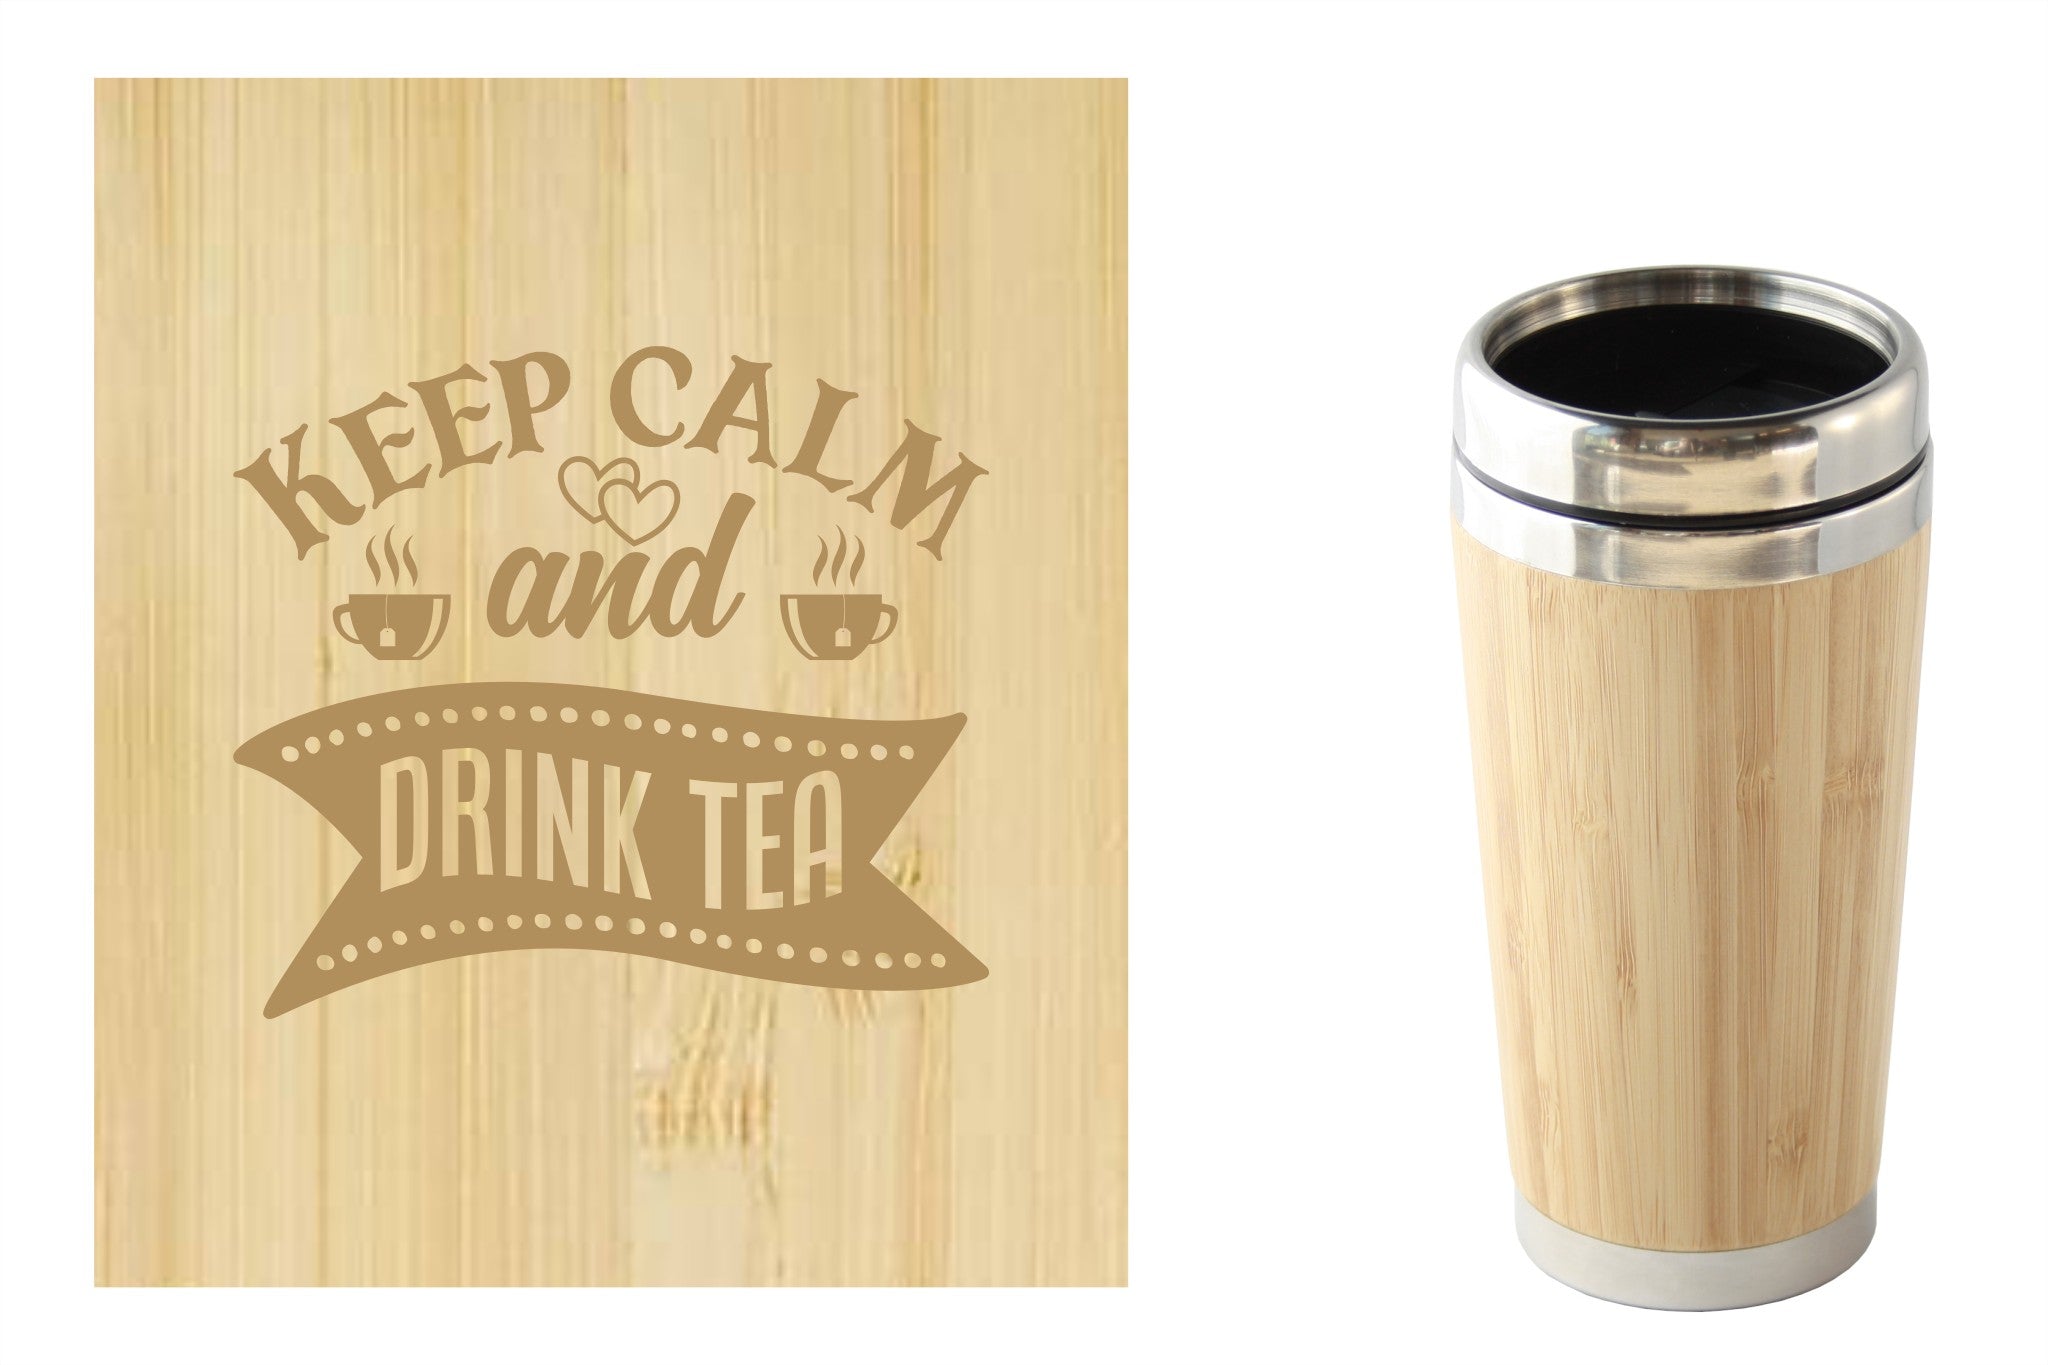 Bamboe reismok met 'Keep calm and drink tea' tekst, perfect voor onderweg. Duurzaam en milieuvriendelijk.